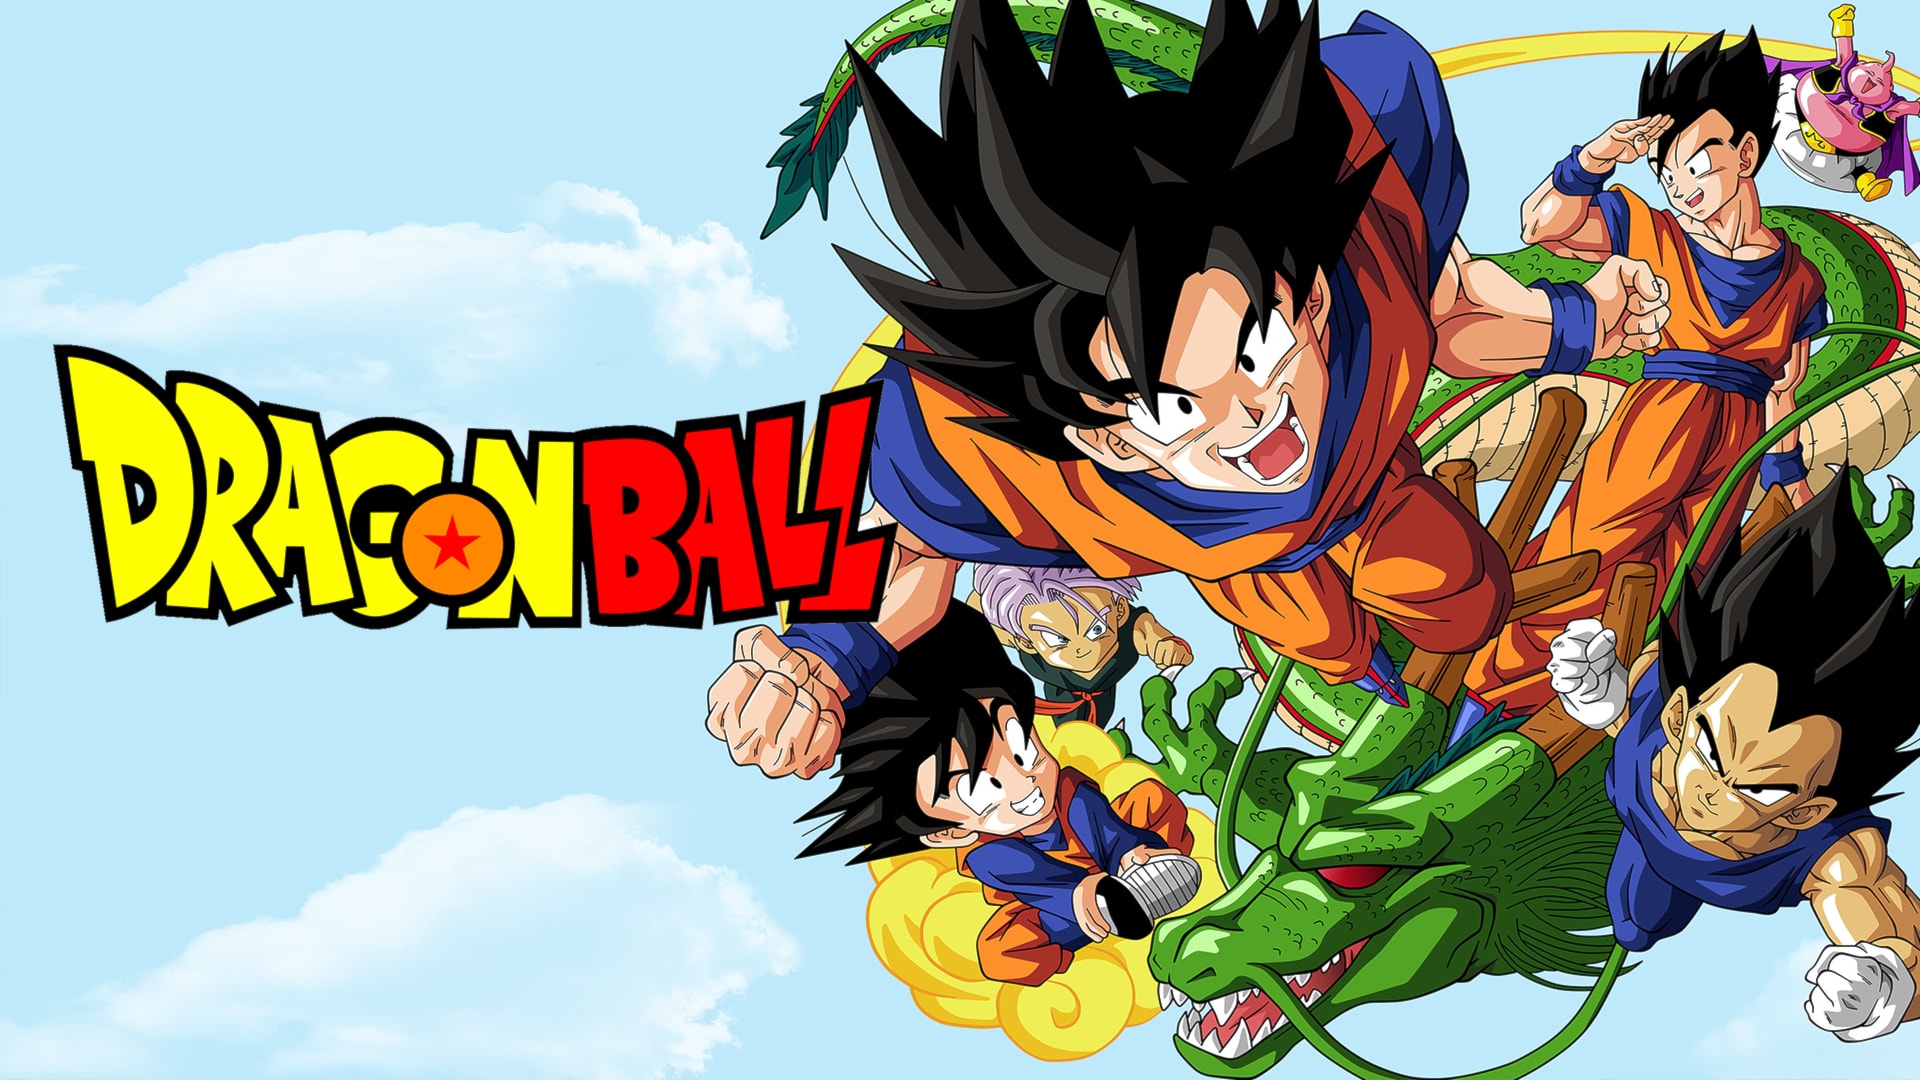 Dragon Ball Vietsub: Đến với Dragon Ball Vietsub, bạn sẽ được tận hưởng những phút giây giải trí sảng khoái với nhân vật yêu thích cùng phụ đề tiếng Việt hoàn chỉnh. Hãy cùng nhân vật chính Goku chinh phục mọi thử thách và giành chiến thắng trong những cuộc chiến tay đôi đầy cảm xúc!